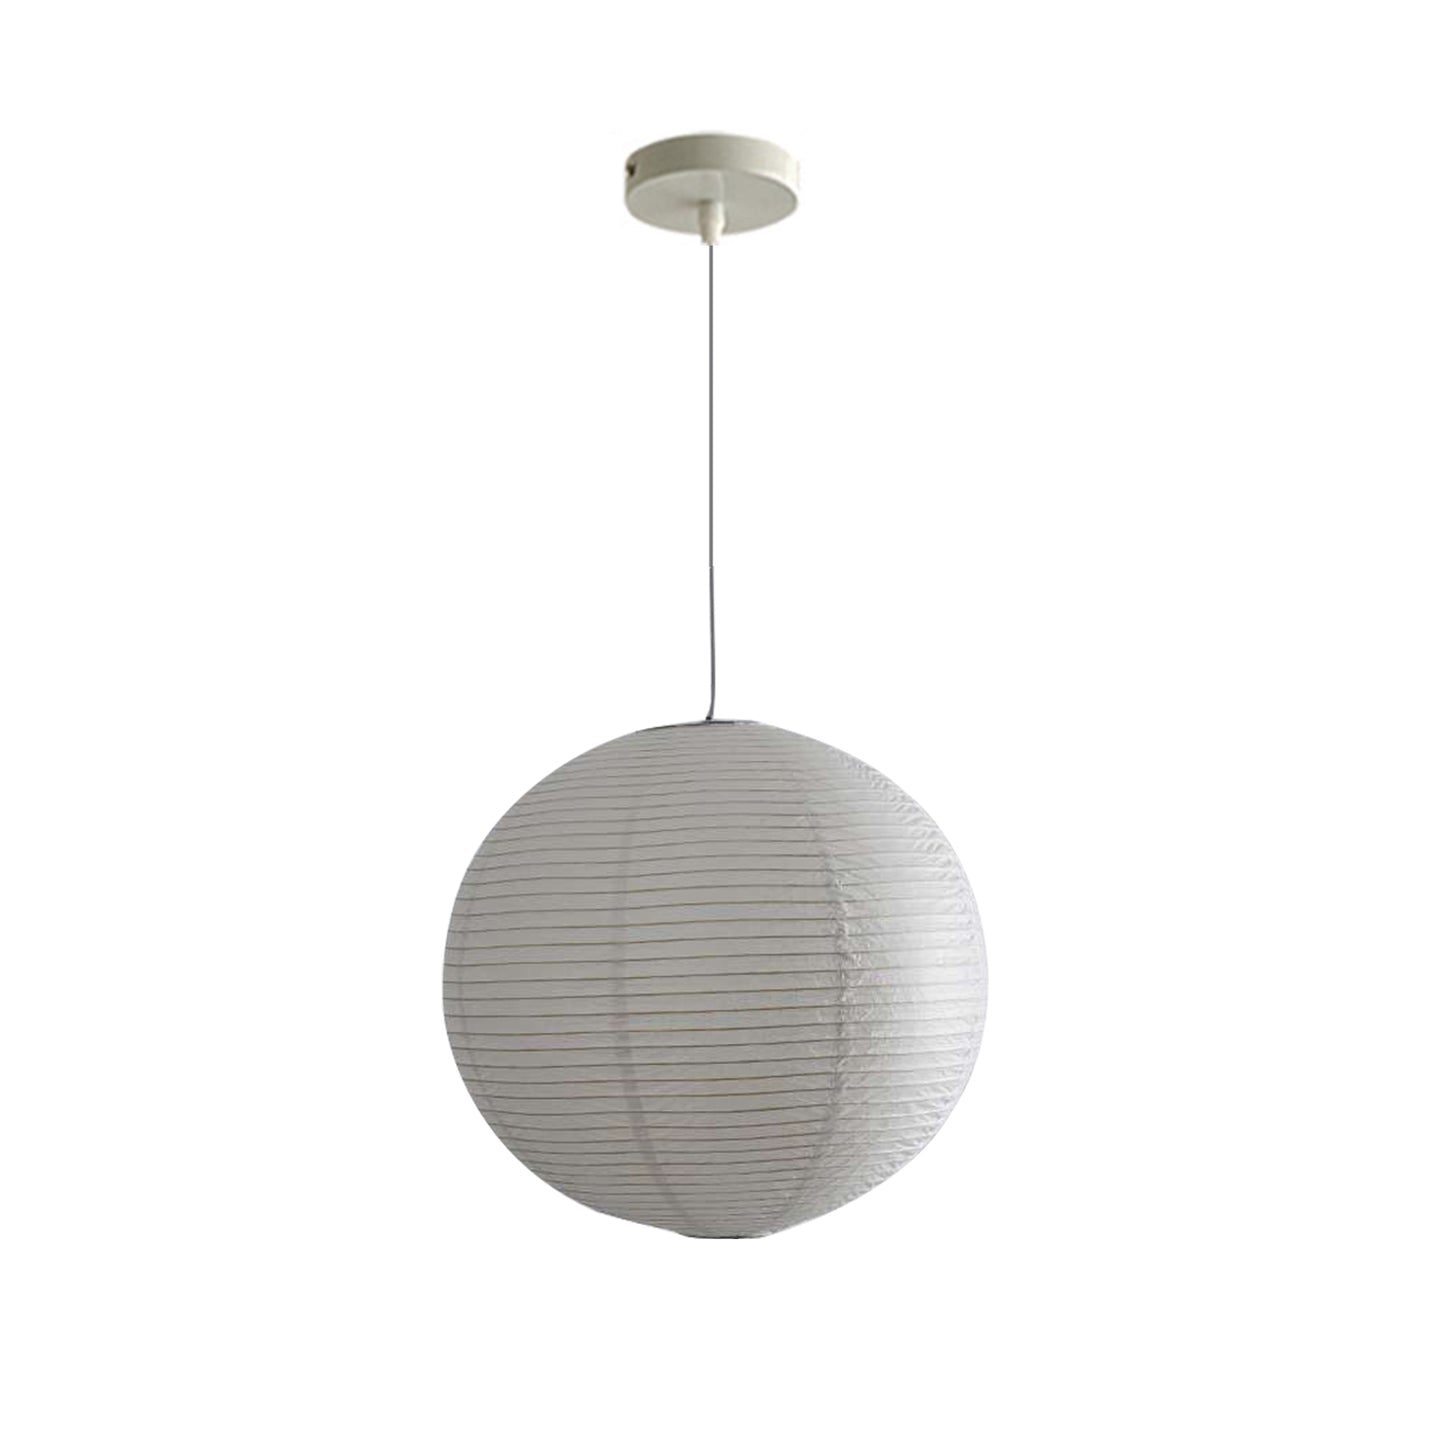 (M)1 - Light White Paper Globe Pendant Light for Living Room